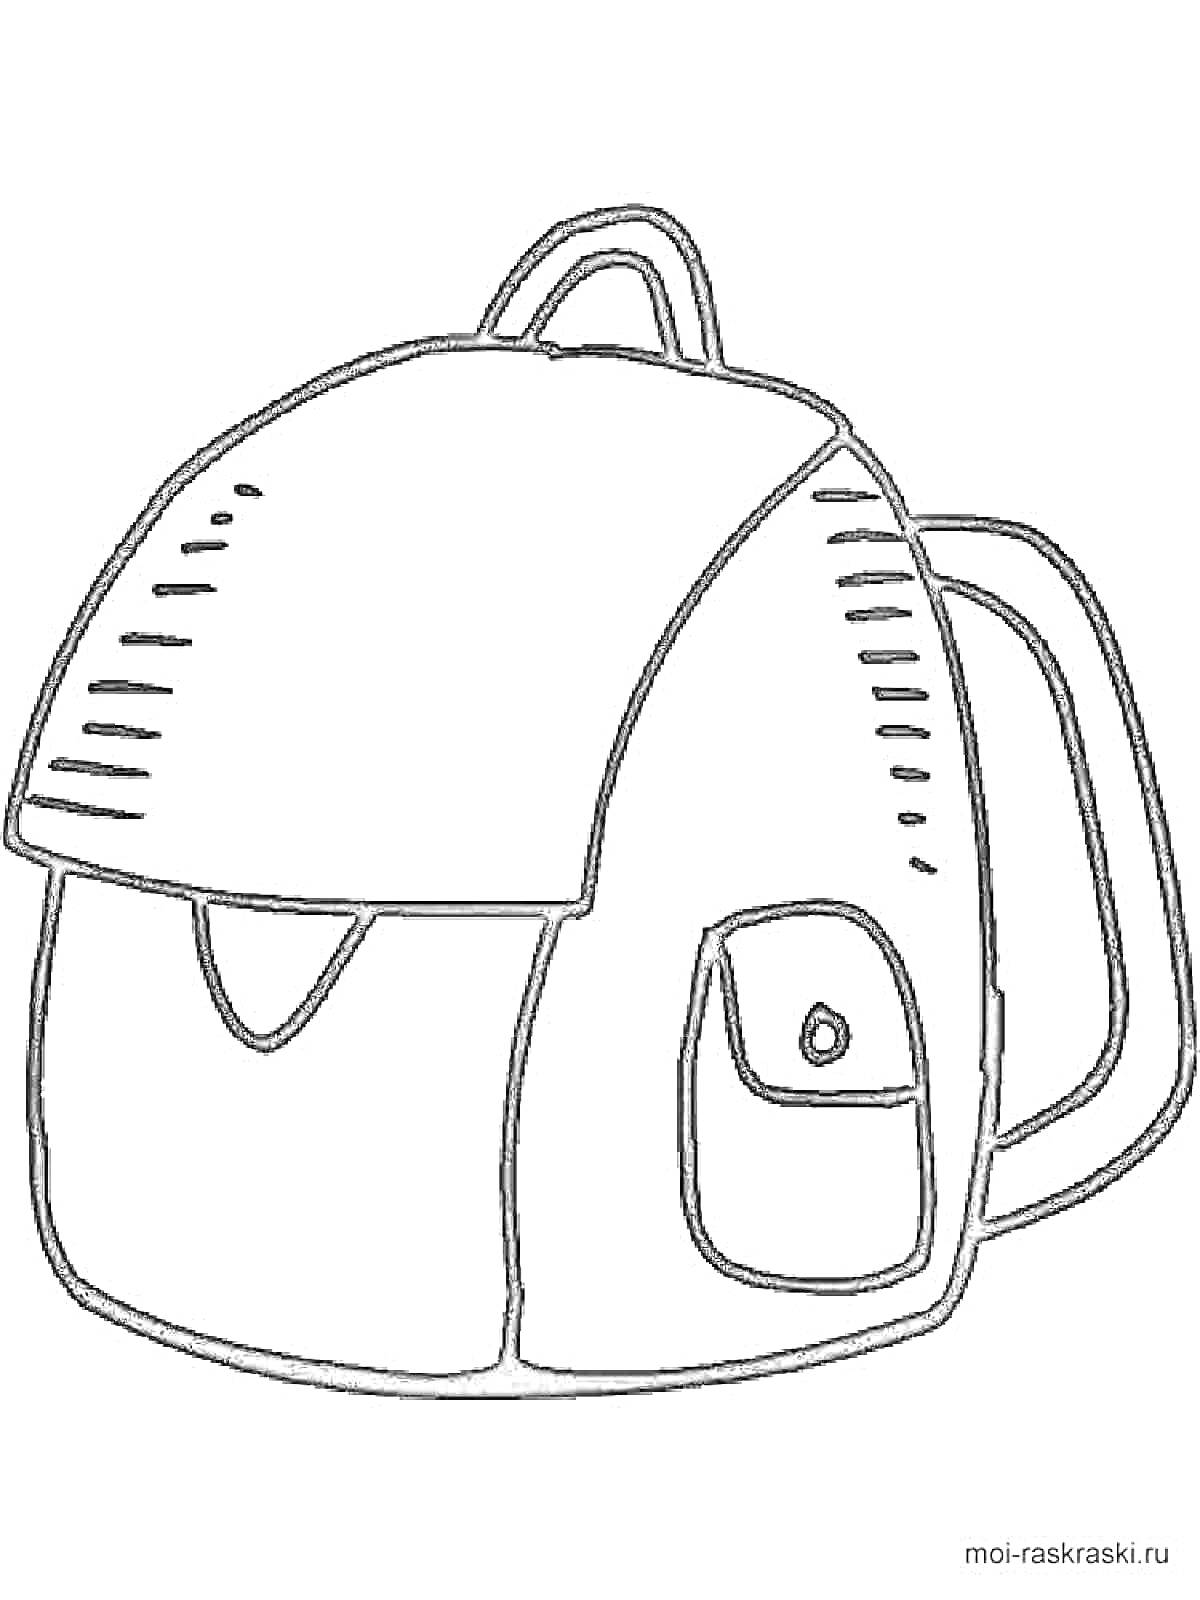 Раскраска Рюкзак с передним карманом и ручкой